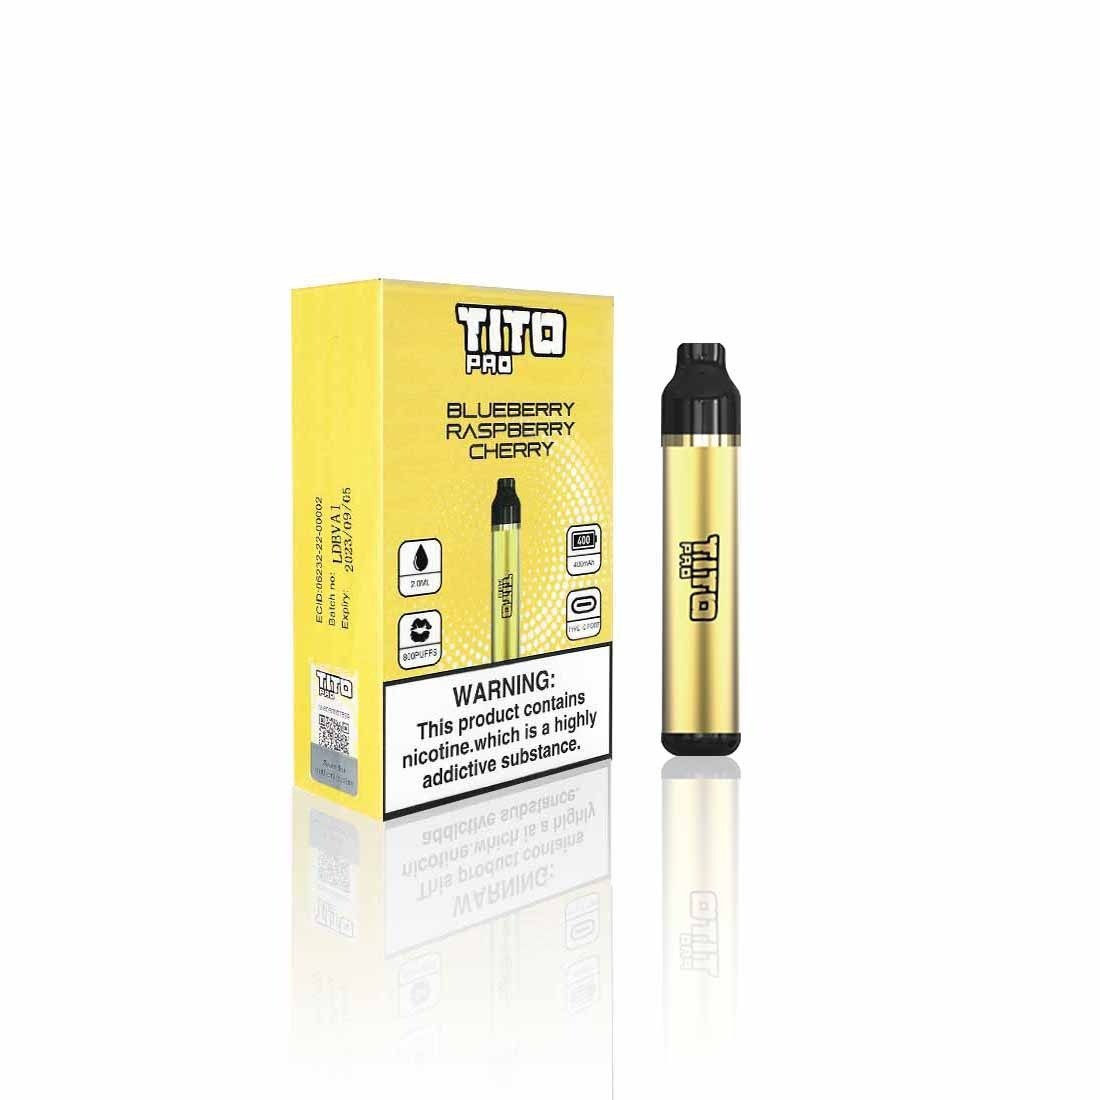 Tito Pro Disposable Vape Pod Kit - Best Vape Wholesale